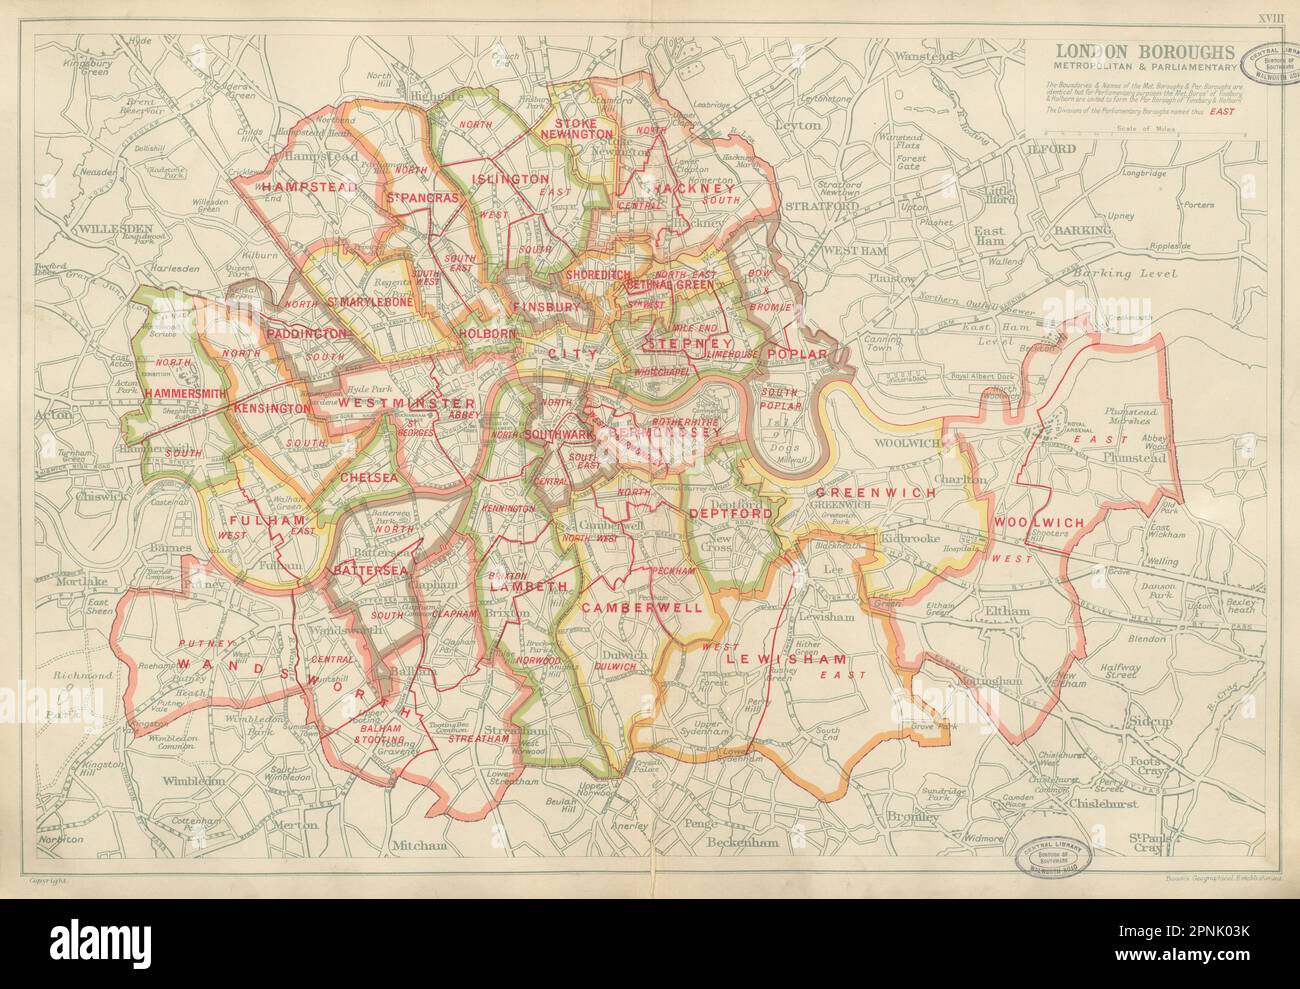 LONDON BOROUGHS. Metropolitan & Parliamentary. Constituencies. BACON 1934 map Stock Photo